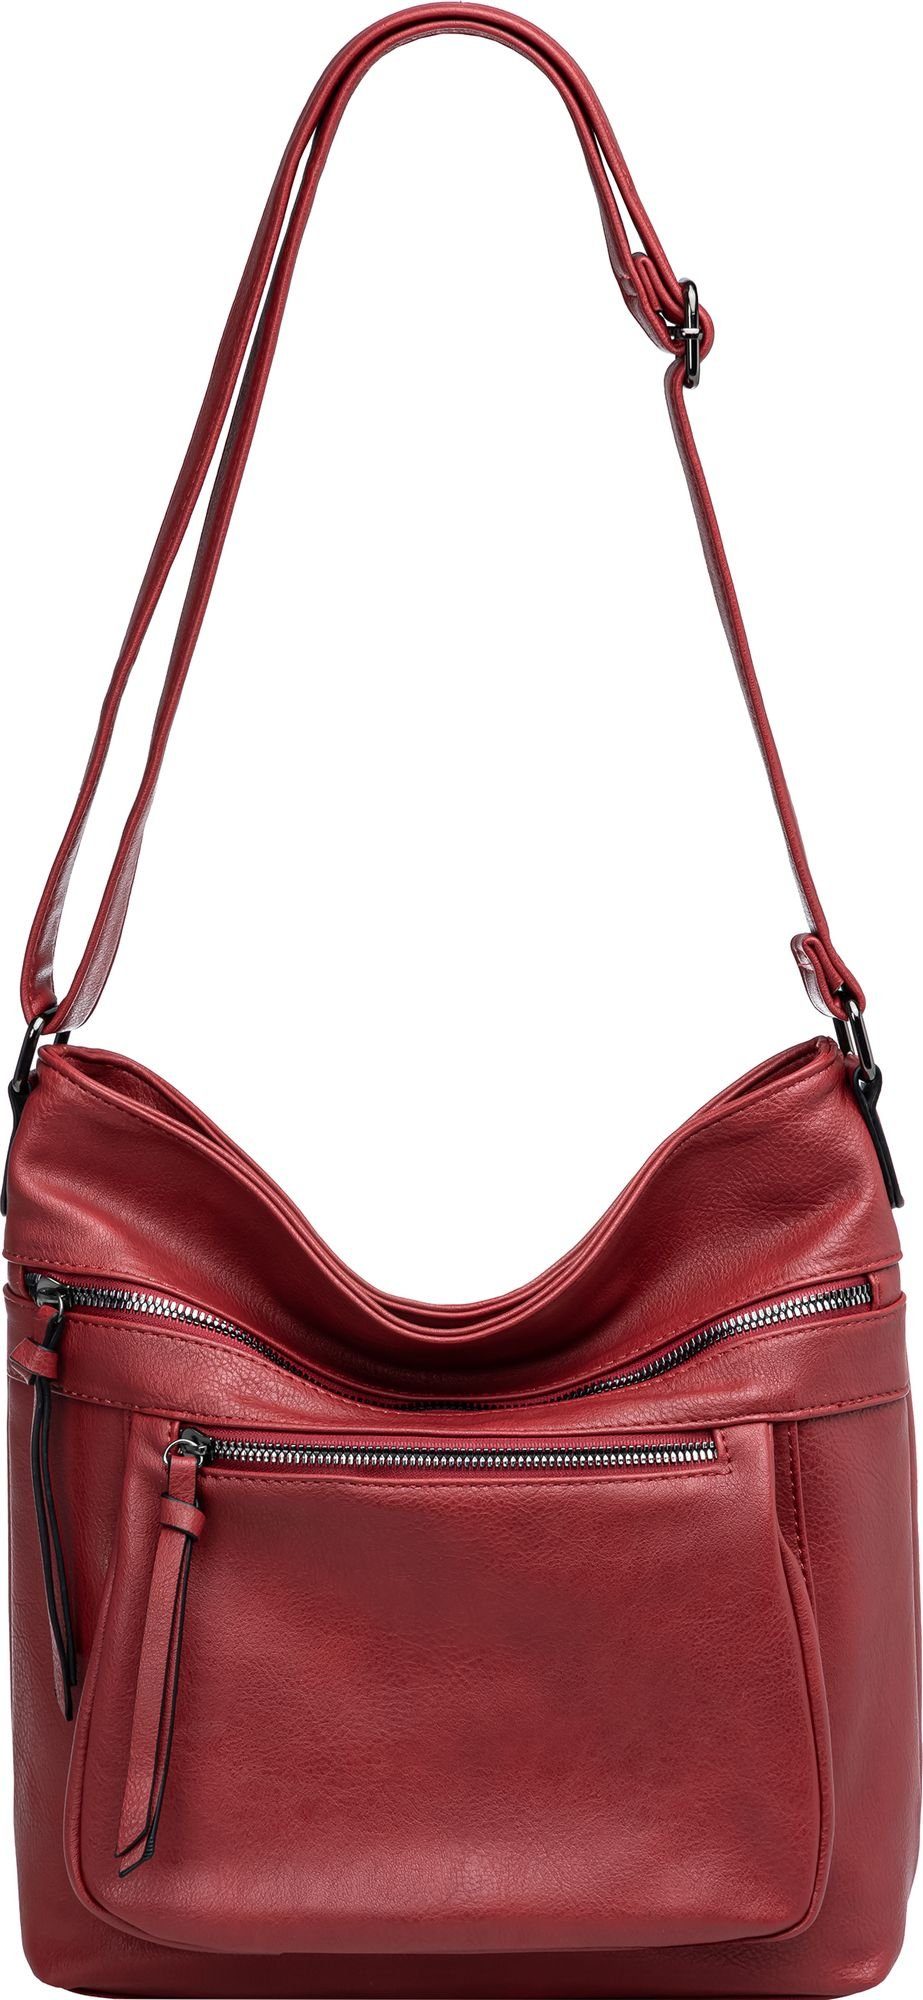 Caspar Umhängetasche TS1070 sportlich elegante mittelgroße Damen Crossbody Bag Umhängetasche rot